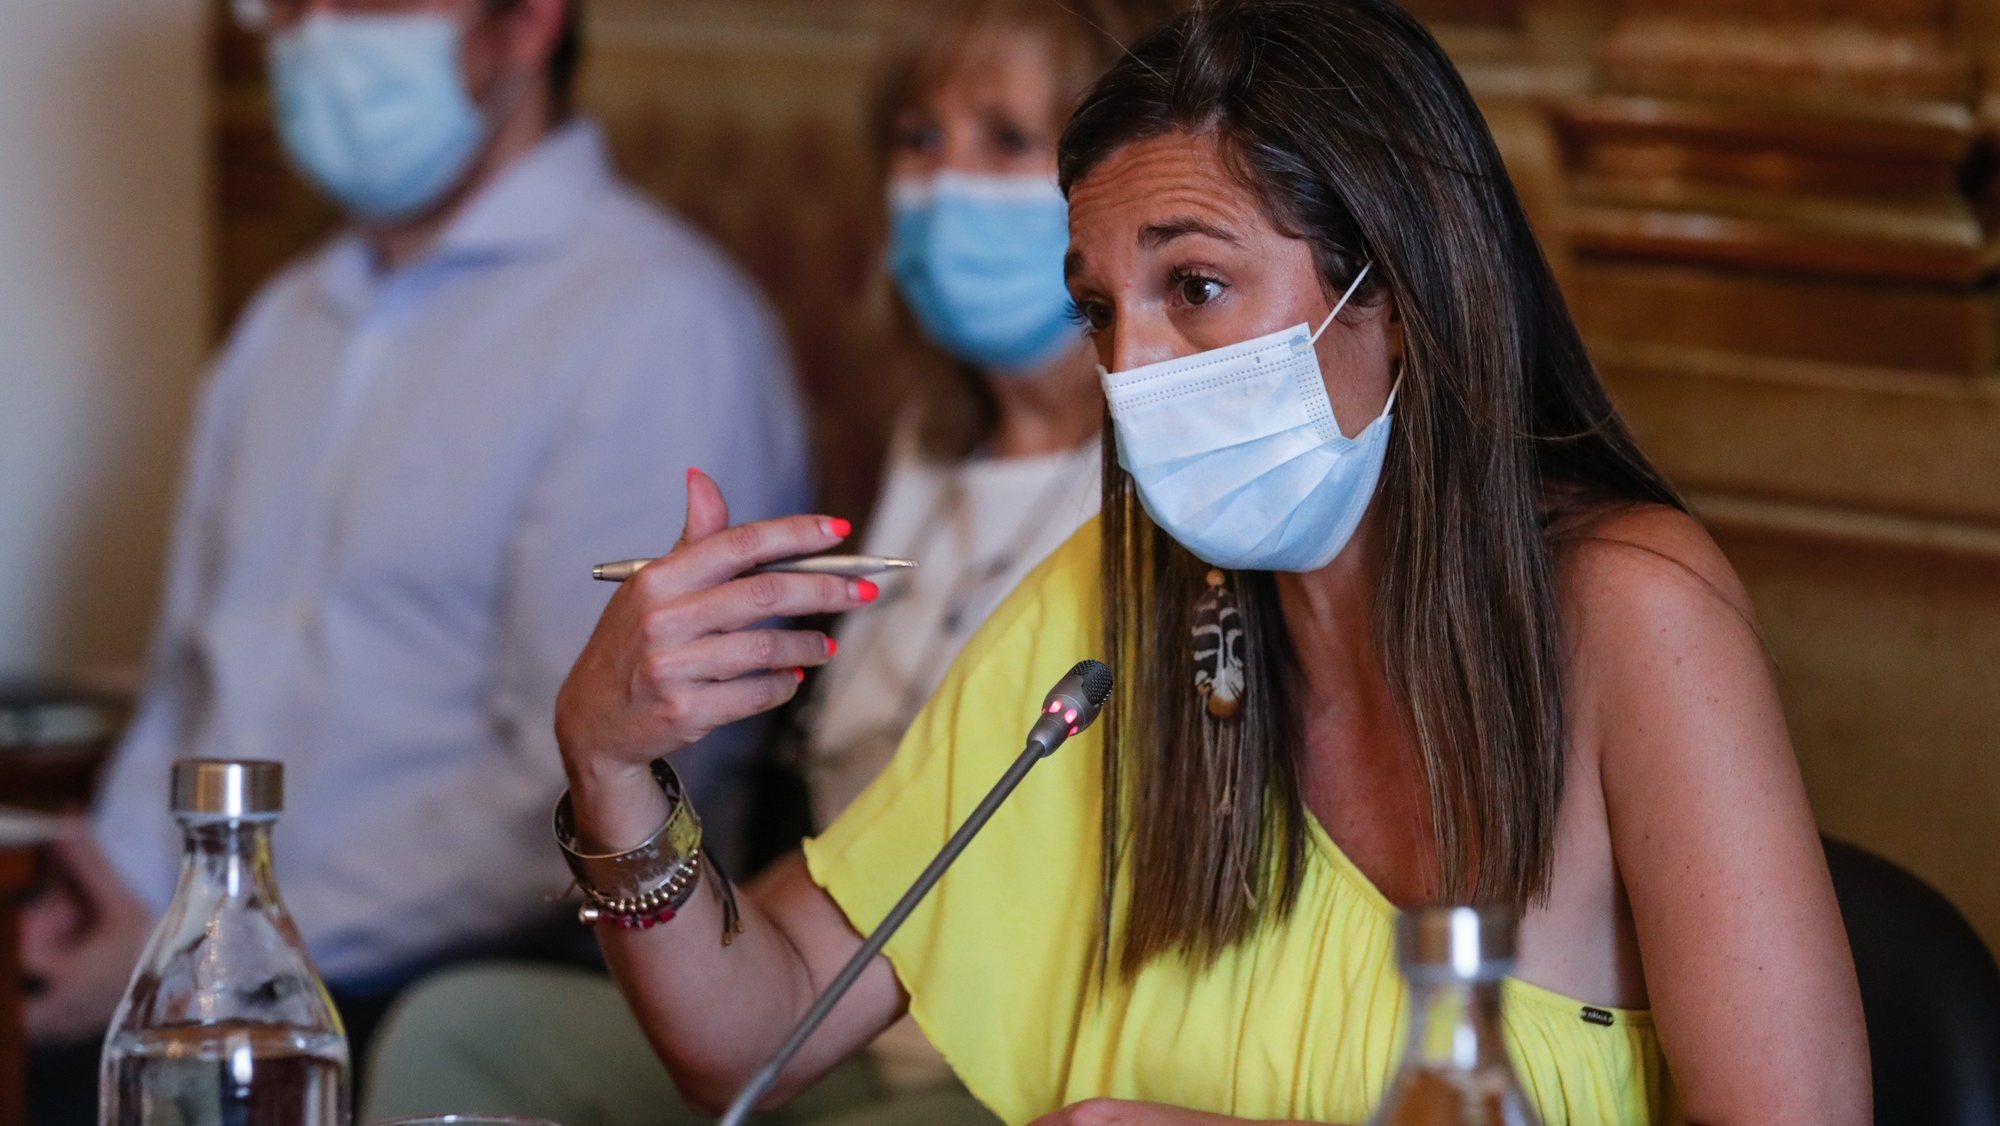 A bastonária da Ordem dos Enfermeiros, Ana Rita Cavaco, fala perante a Comissão de Saúde, na Assembleia da República em Lisboa, 27 de maio de 2020. TIAGO PETINGA/LUSA